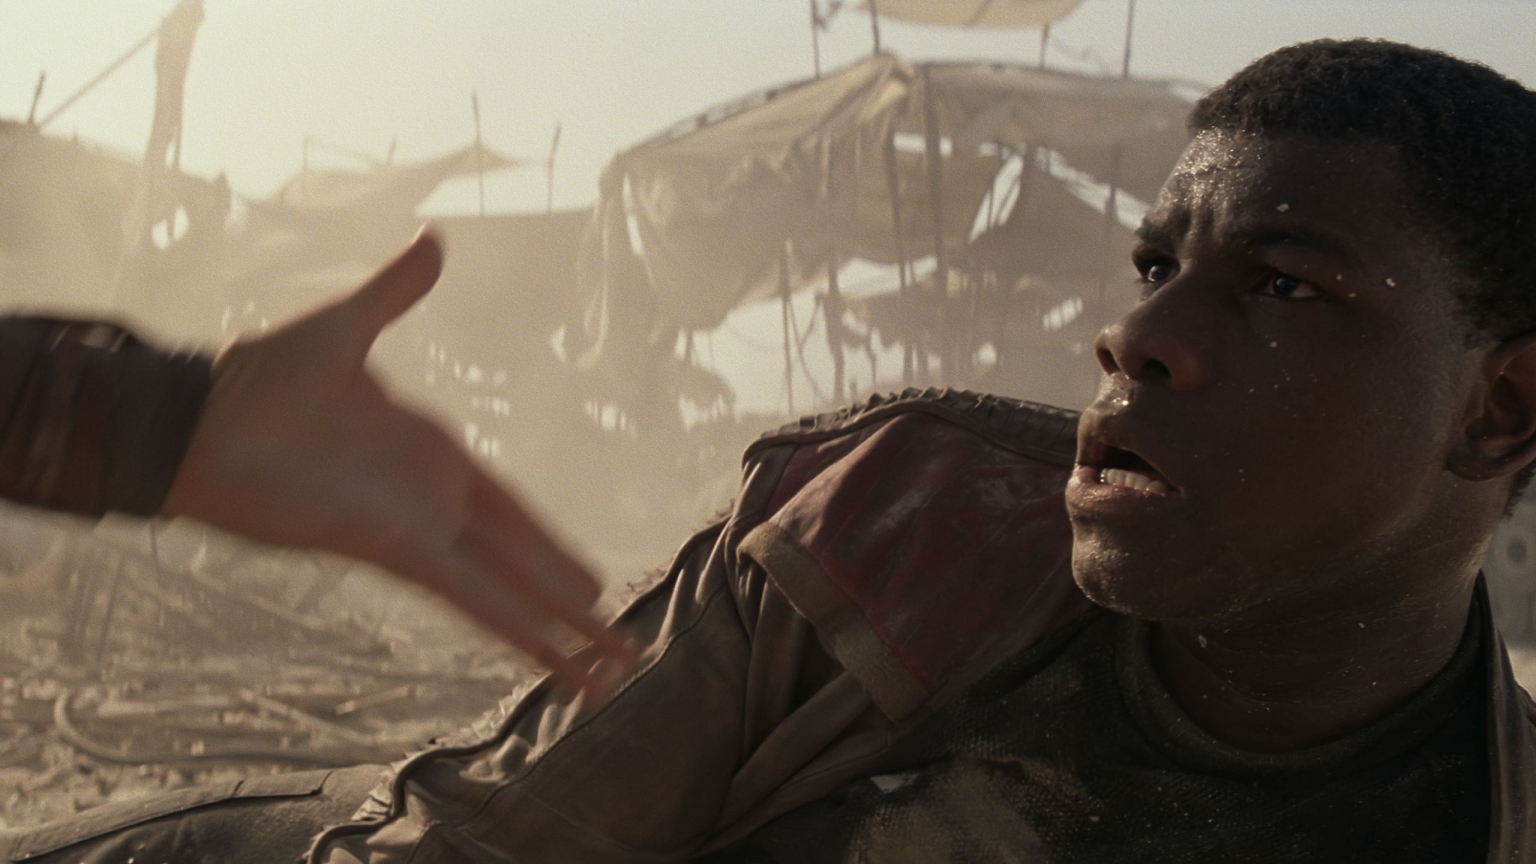 Star Wars The Force Awakens John Boyega for 1536 x 864 HDTV resolution